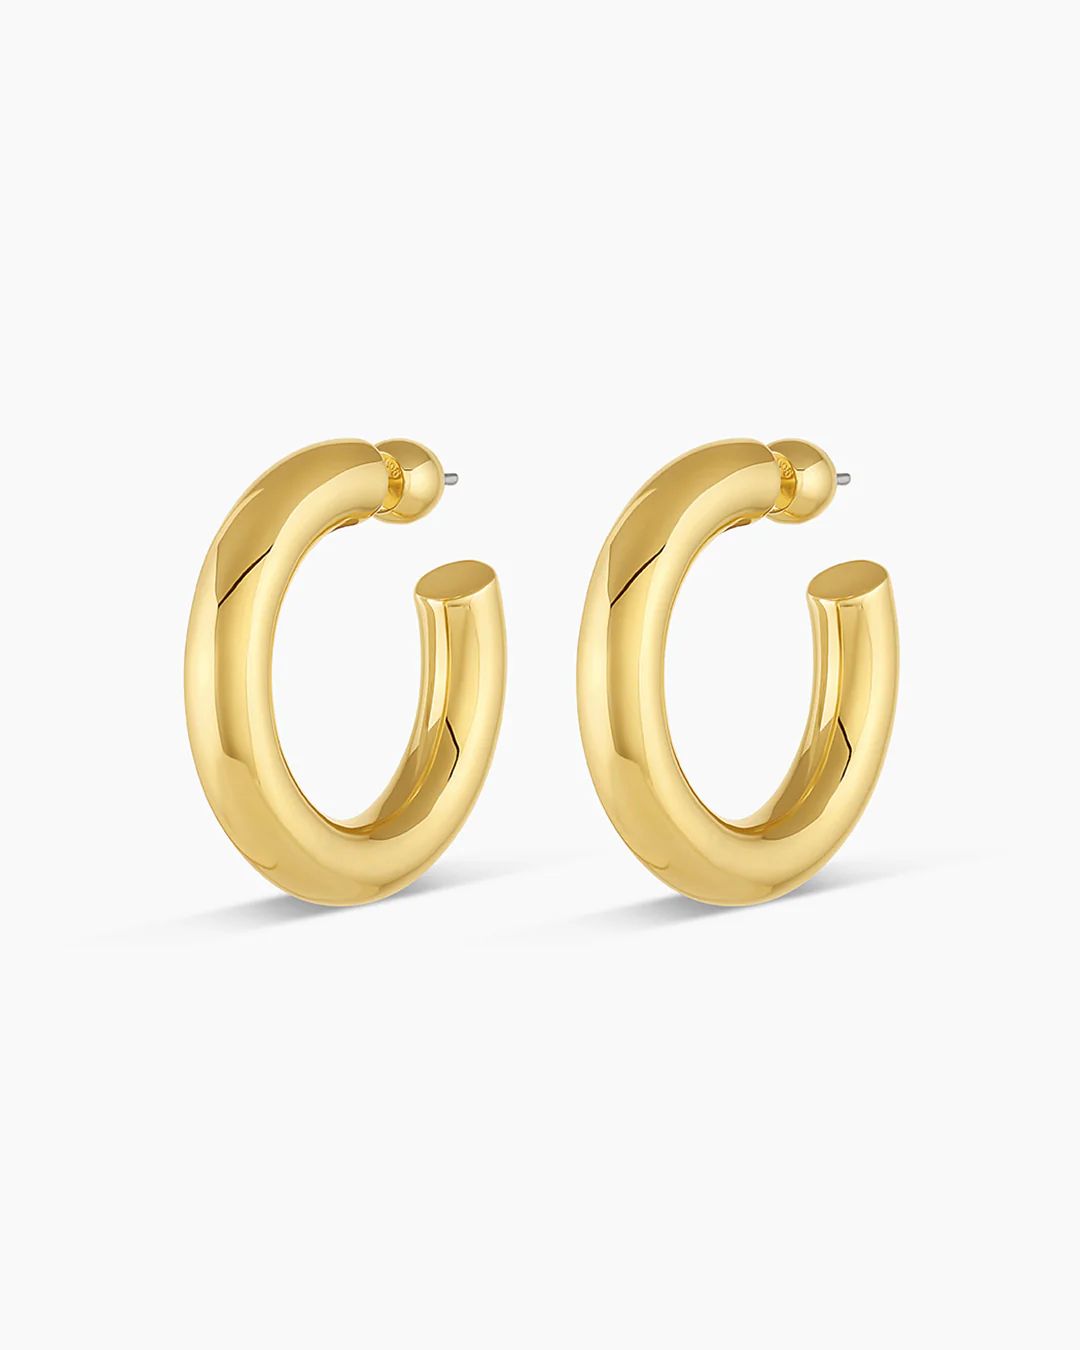 Lou Statement Hoops Earring in Gold, Women's by gorjana | Gorjana